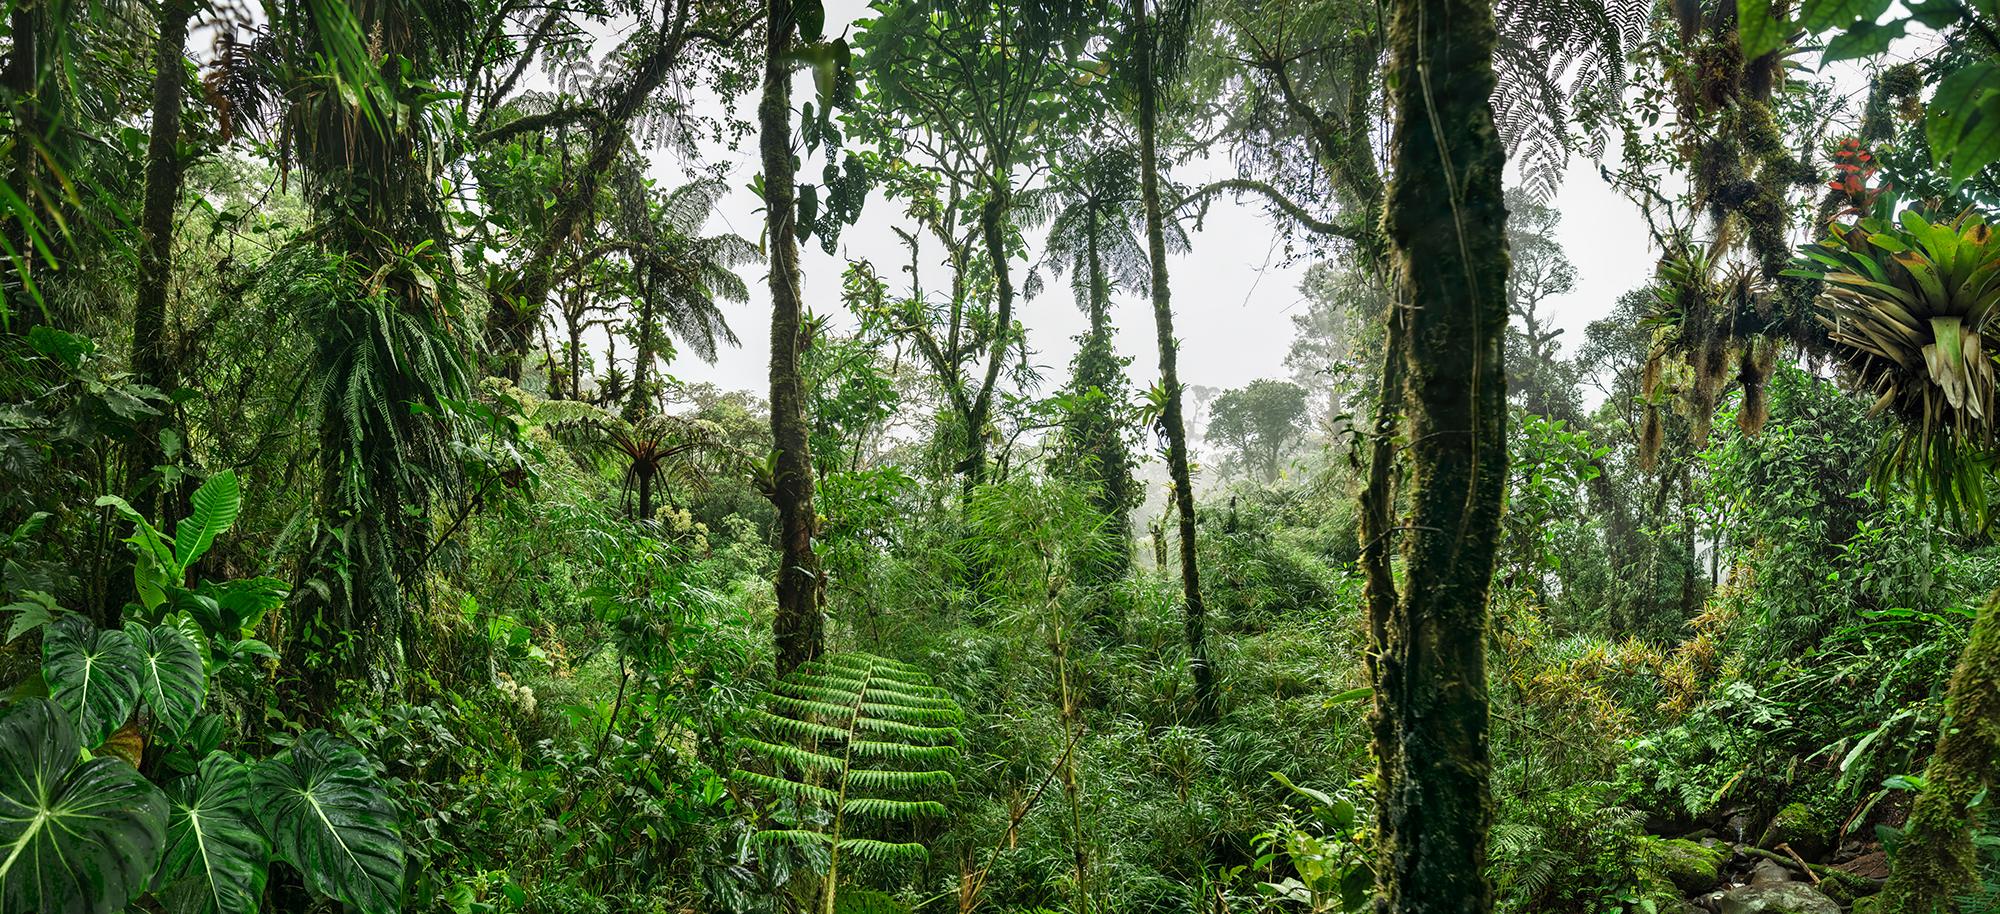 Erik Pawassar Landscape Print – Wolkenwälder III  Großformatige Fotografie eines fantastischen tropischen Regenwaldes